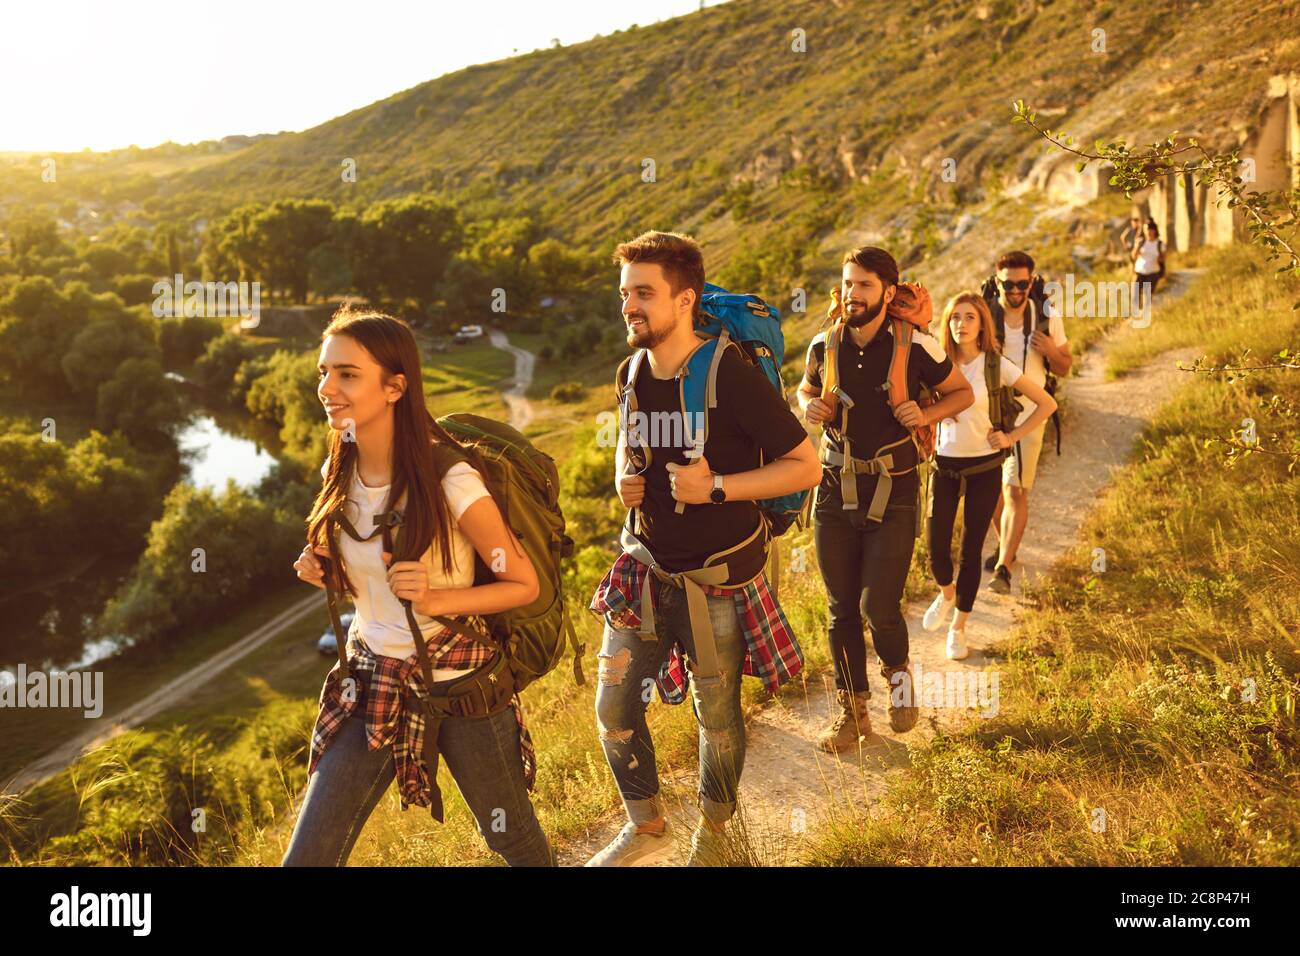 Les jeunes avec des sacs à dos marchent le long d'un chemin étroit dans les montagnes. Groupe de touristes joyeux randonnée dehors en été Banque D'Images